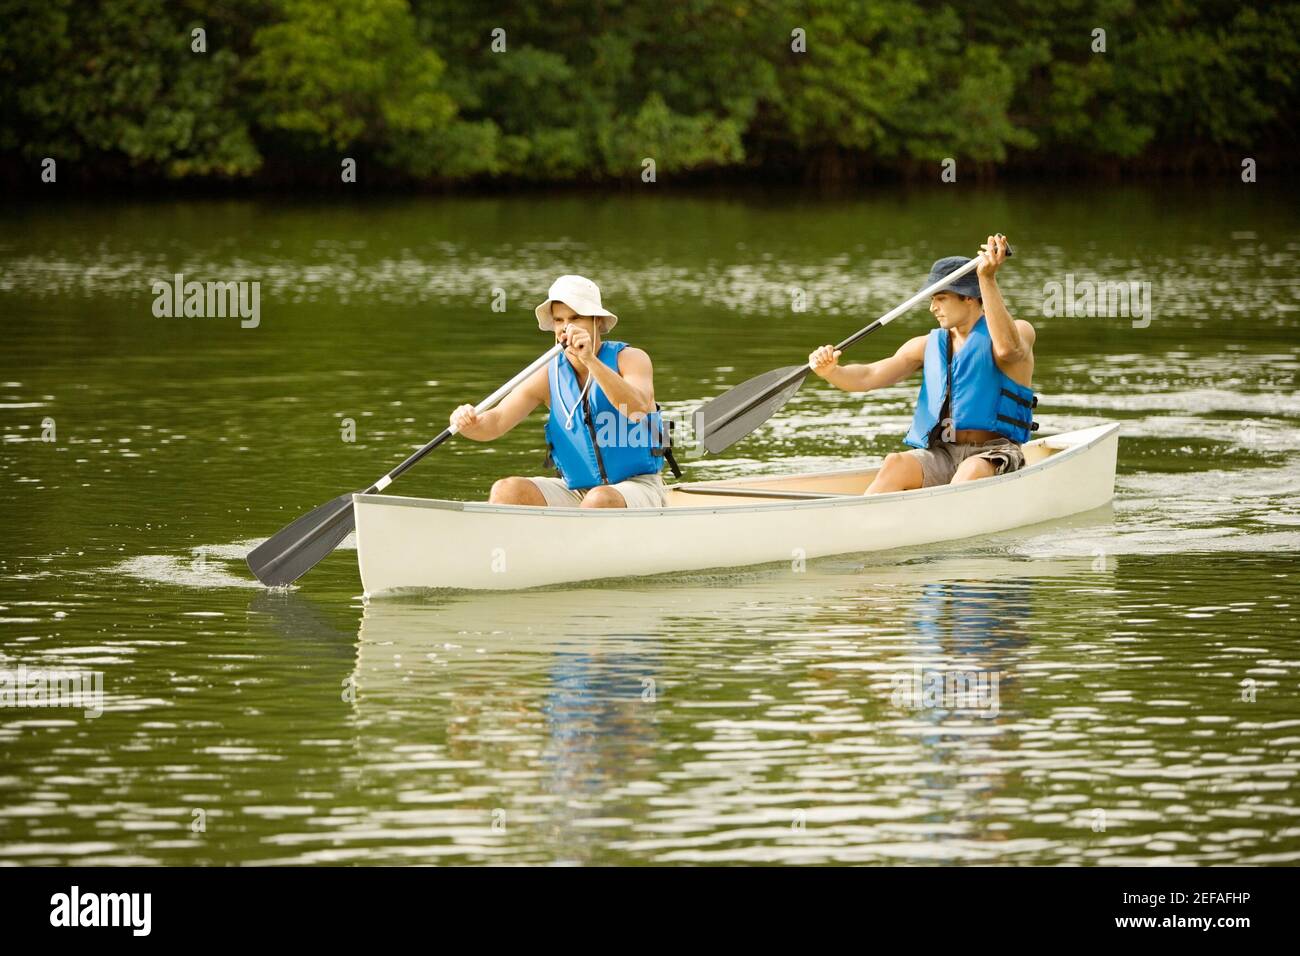 Zwei Männer mit mittlerem Erwachsenenalter, die in einem See Boot fahren Stockfoto